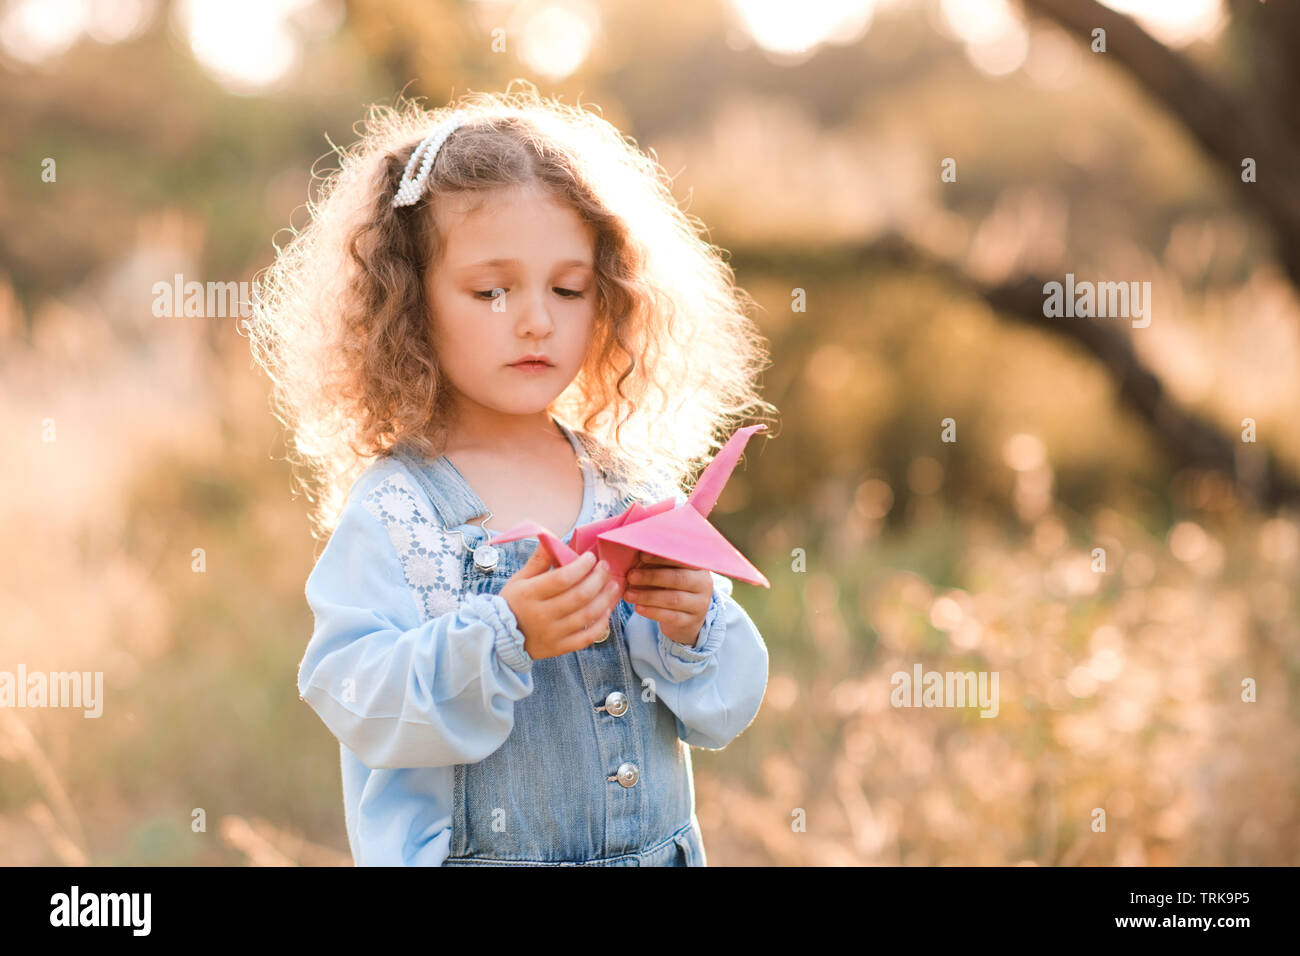 Süße blonde Kind Mädchen 3-4 Jahre alten Holding Papier origami Crane  stehen draußen über die Natur Hintergrund. Kinder spielen mit Spielzeug.  Kindheit Stockfotografie - Alamy